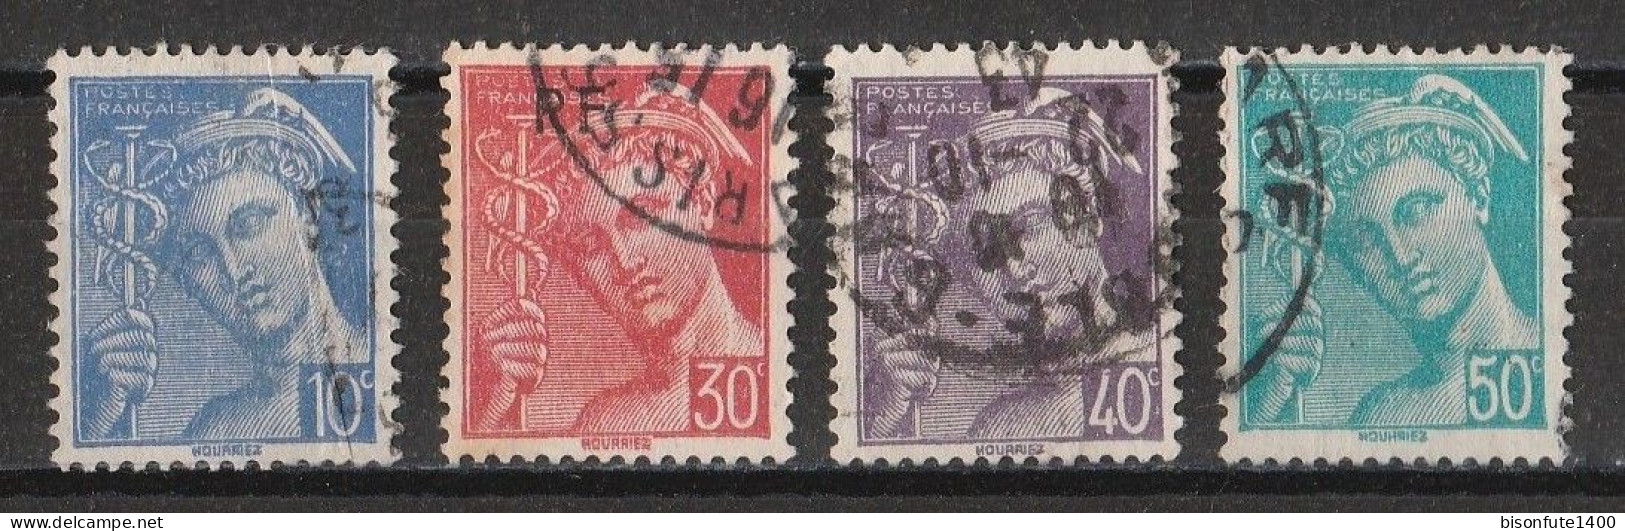 France 1942 : Timbres Yvert & Tellier N° 546 - 547 - 548 - 549 Et 552 Avec Oblitérations Rondes. - Usados